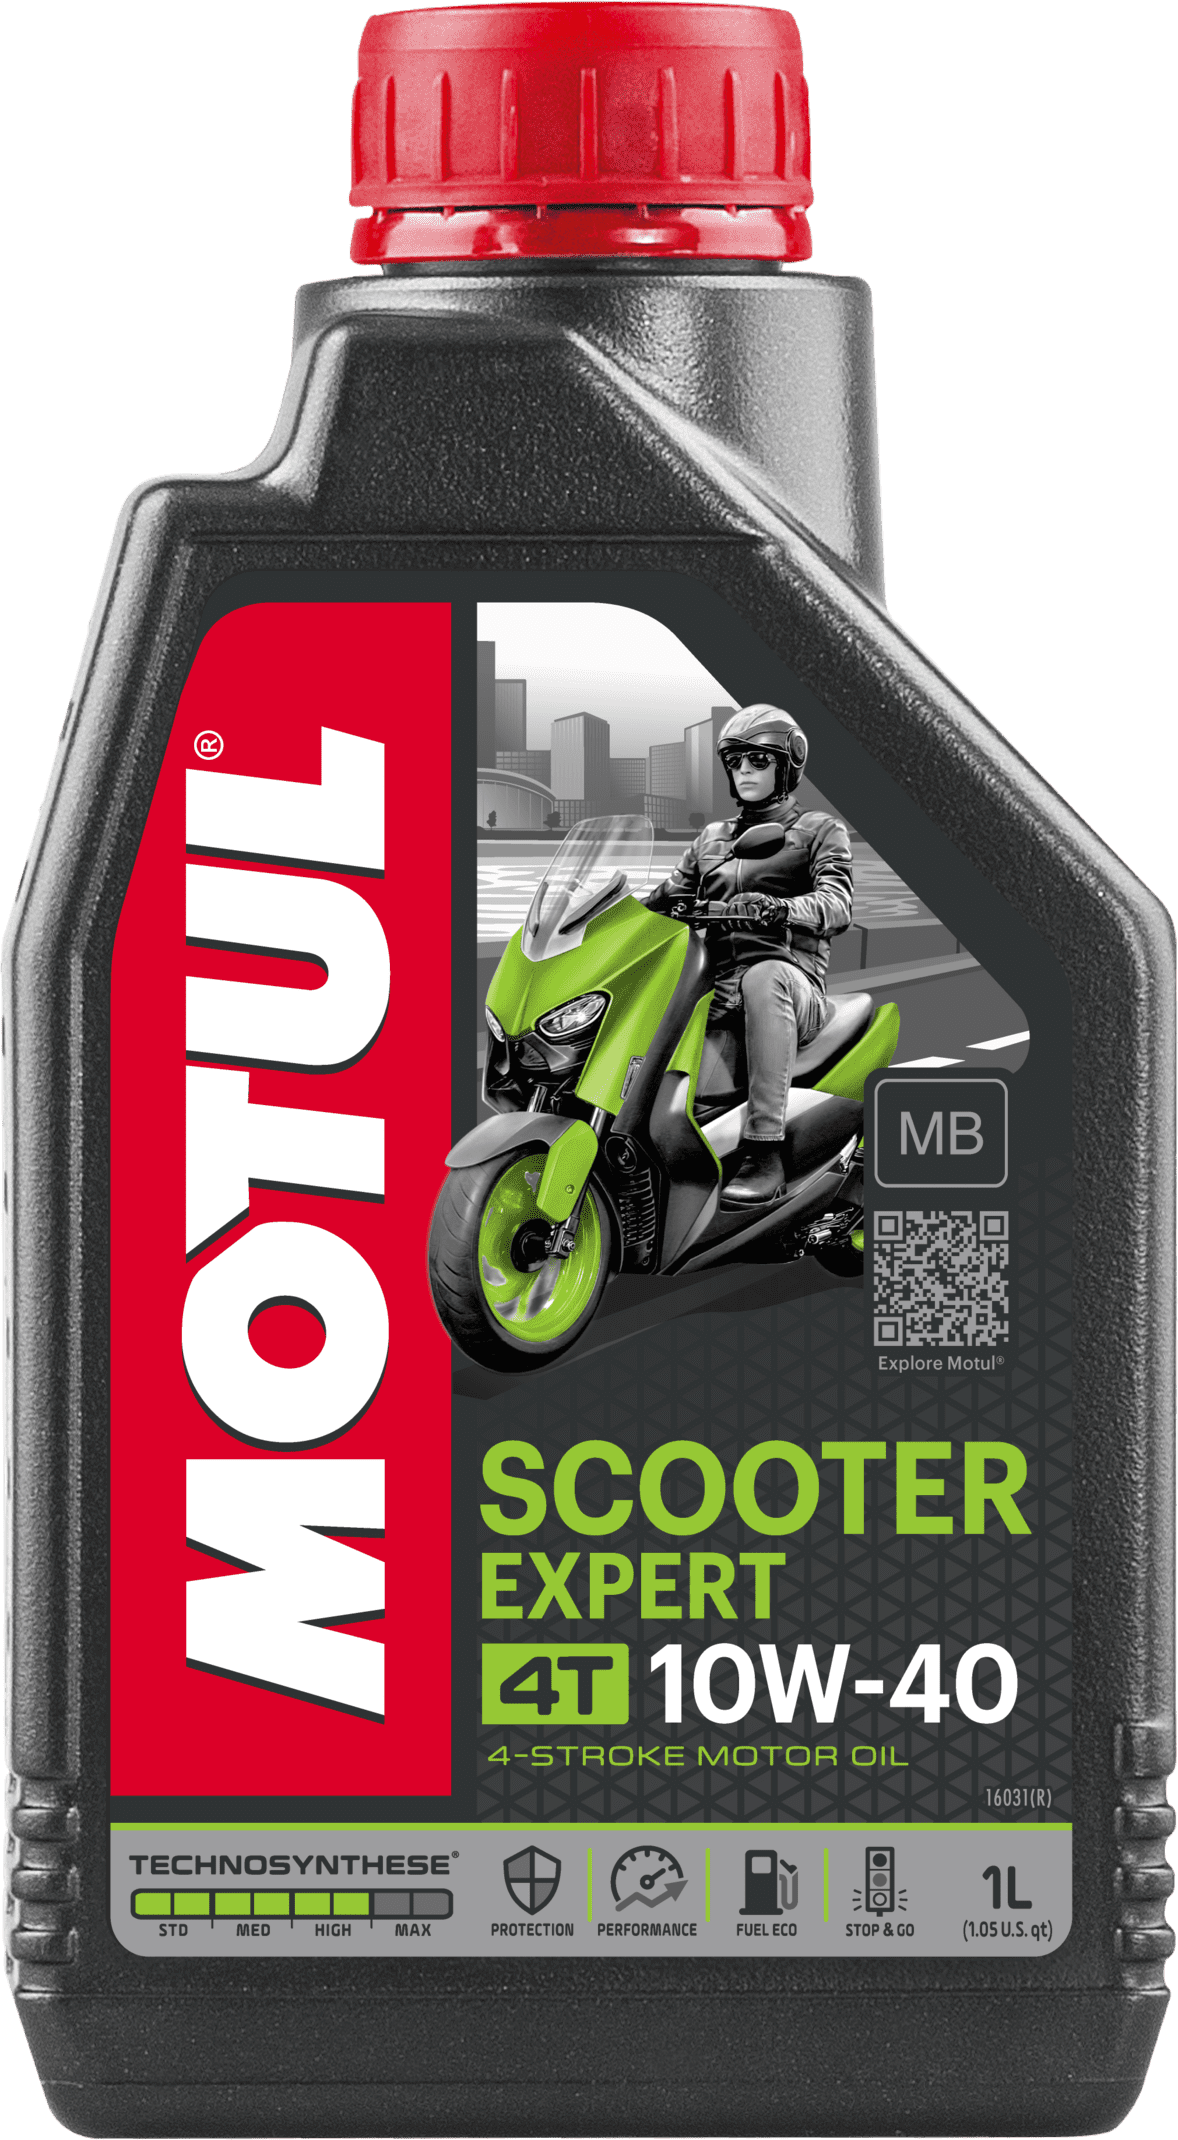 Motul Scooter Expert 4T 10W-40 MB, 1 lt